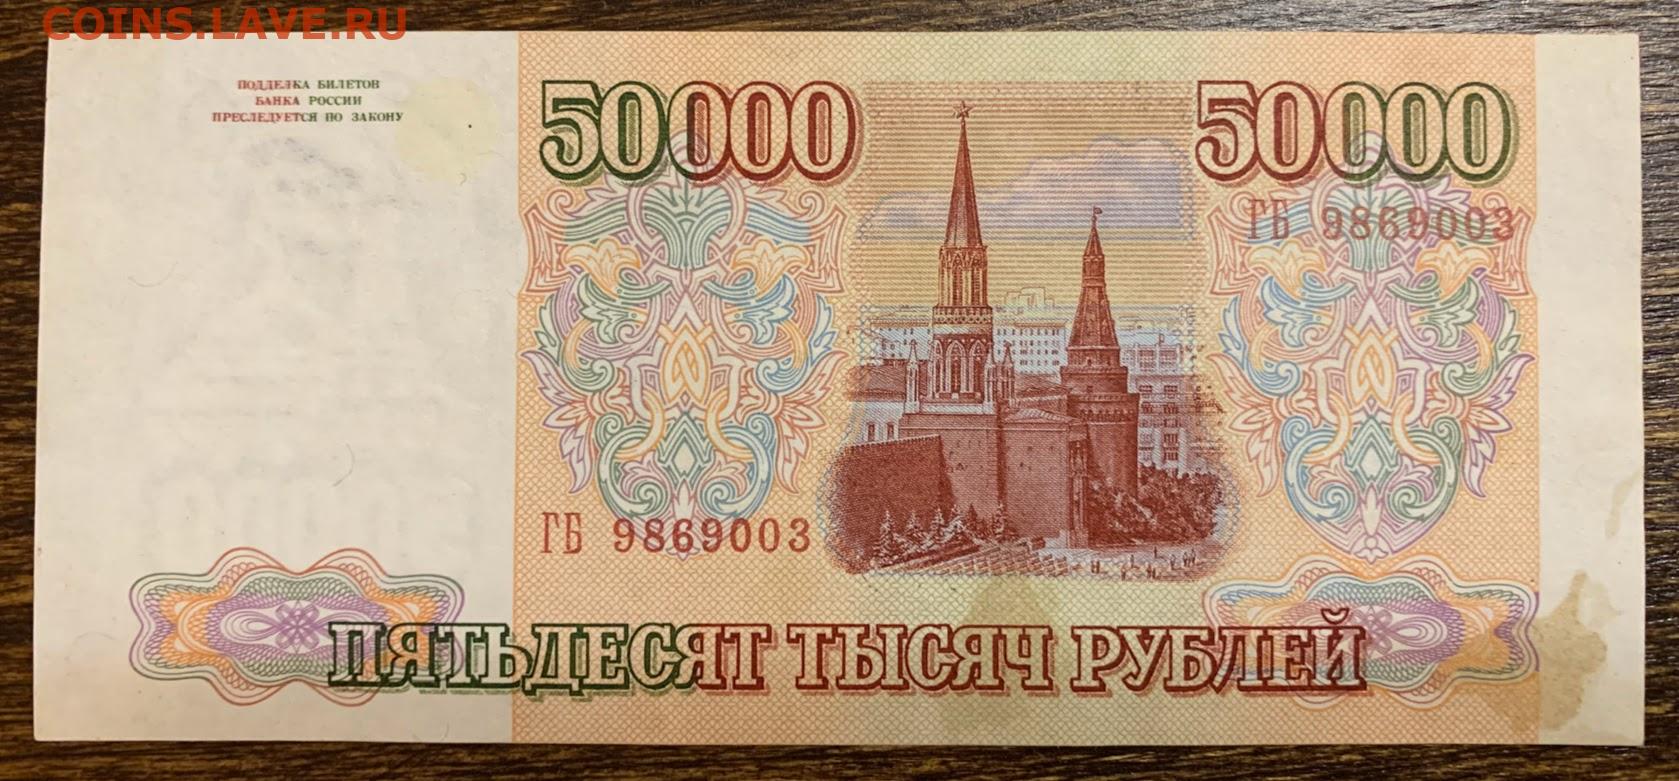 50000 рублей россии в долларах. 50000 Рублей. 50000 Рублей 1993 года. Купюра 50000 рублей. 50 000 Рублей 1993.